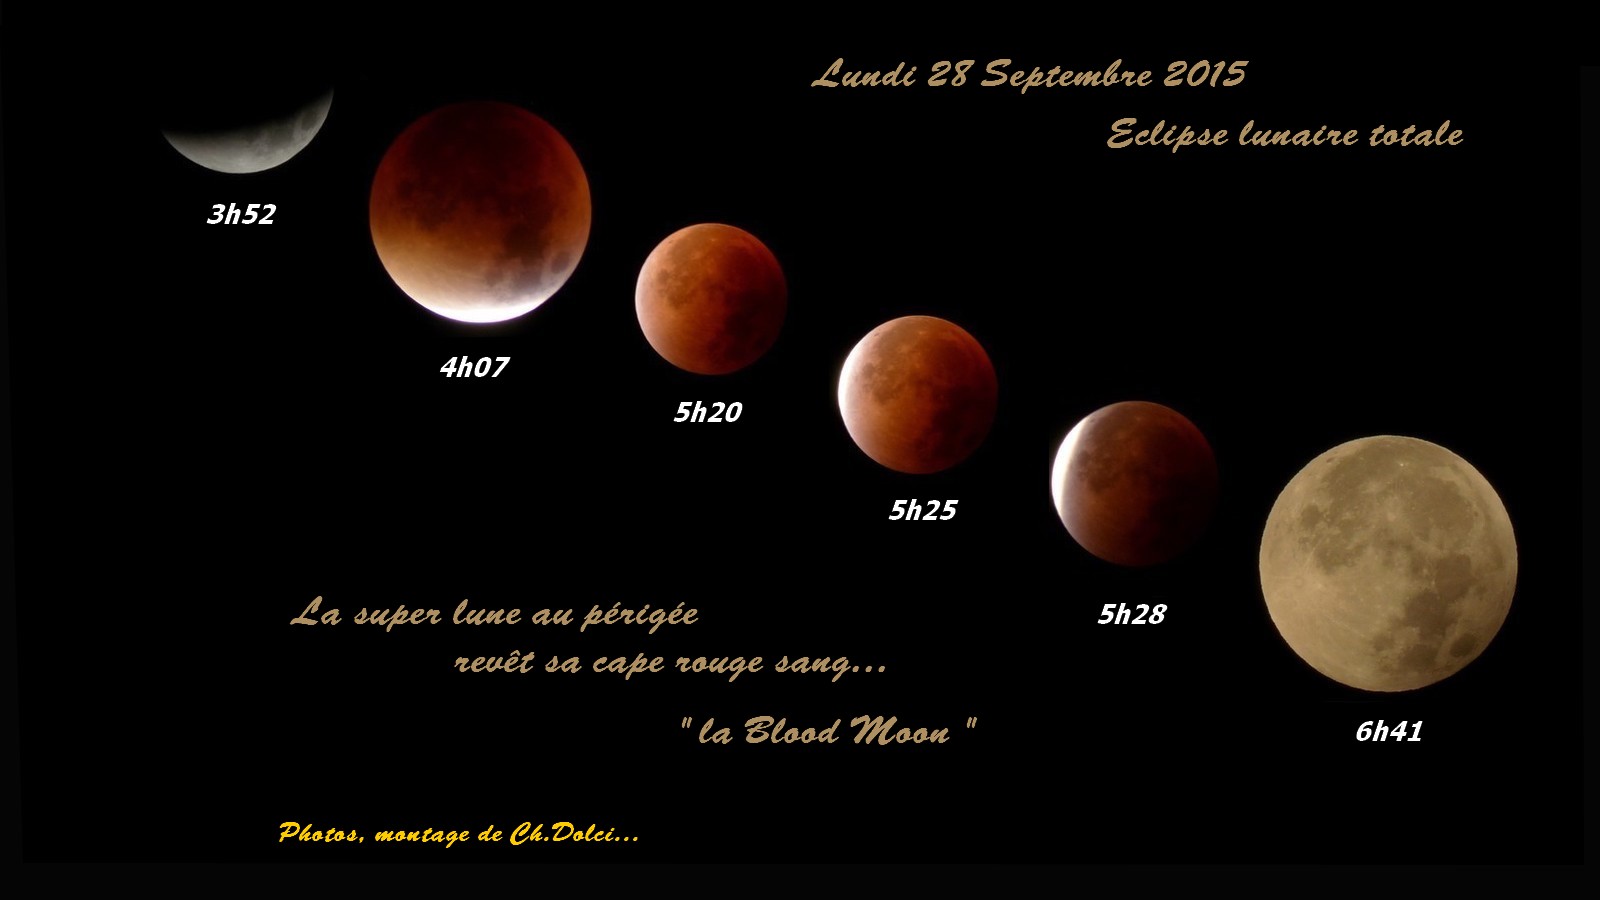 Eclipse lunaire totale du 28 Septembre 2015